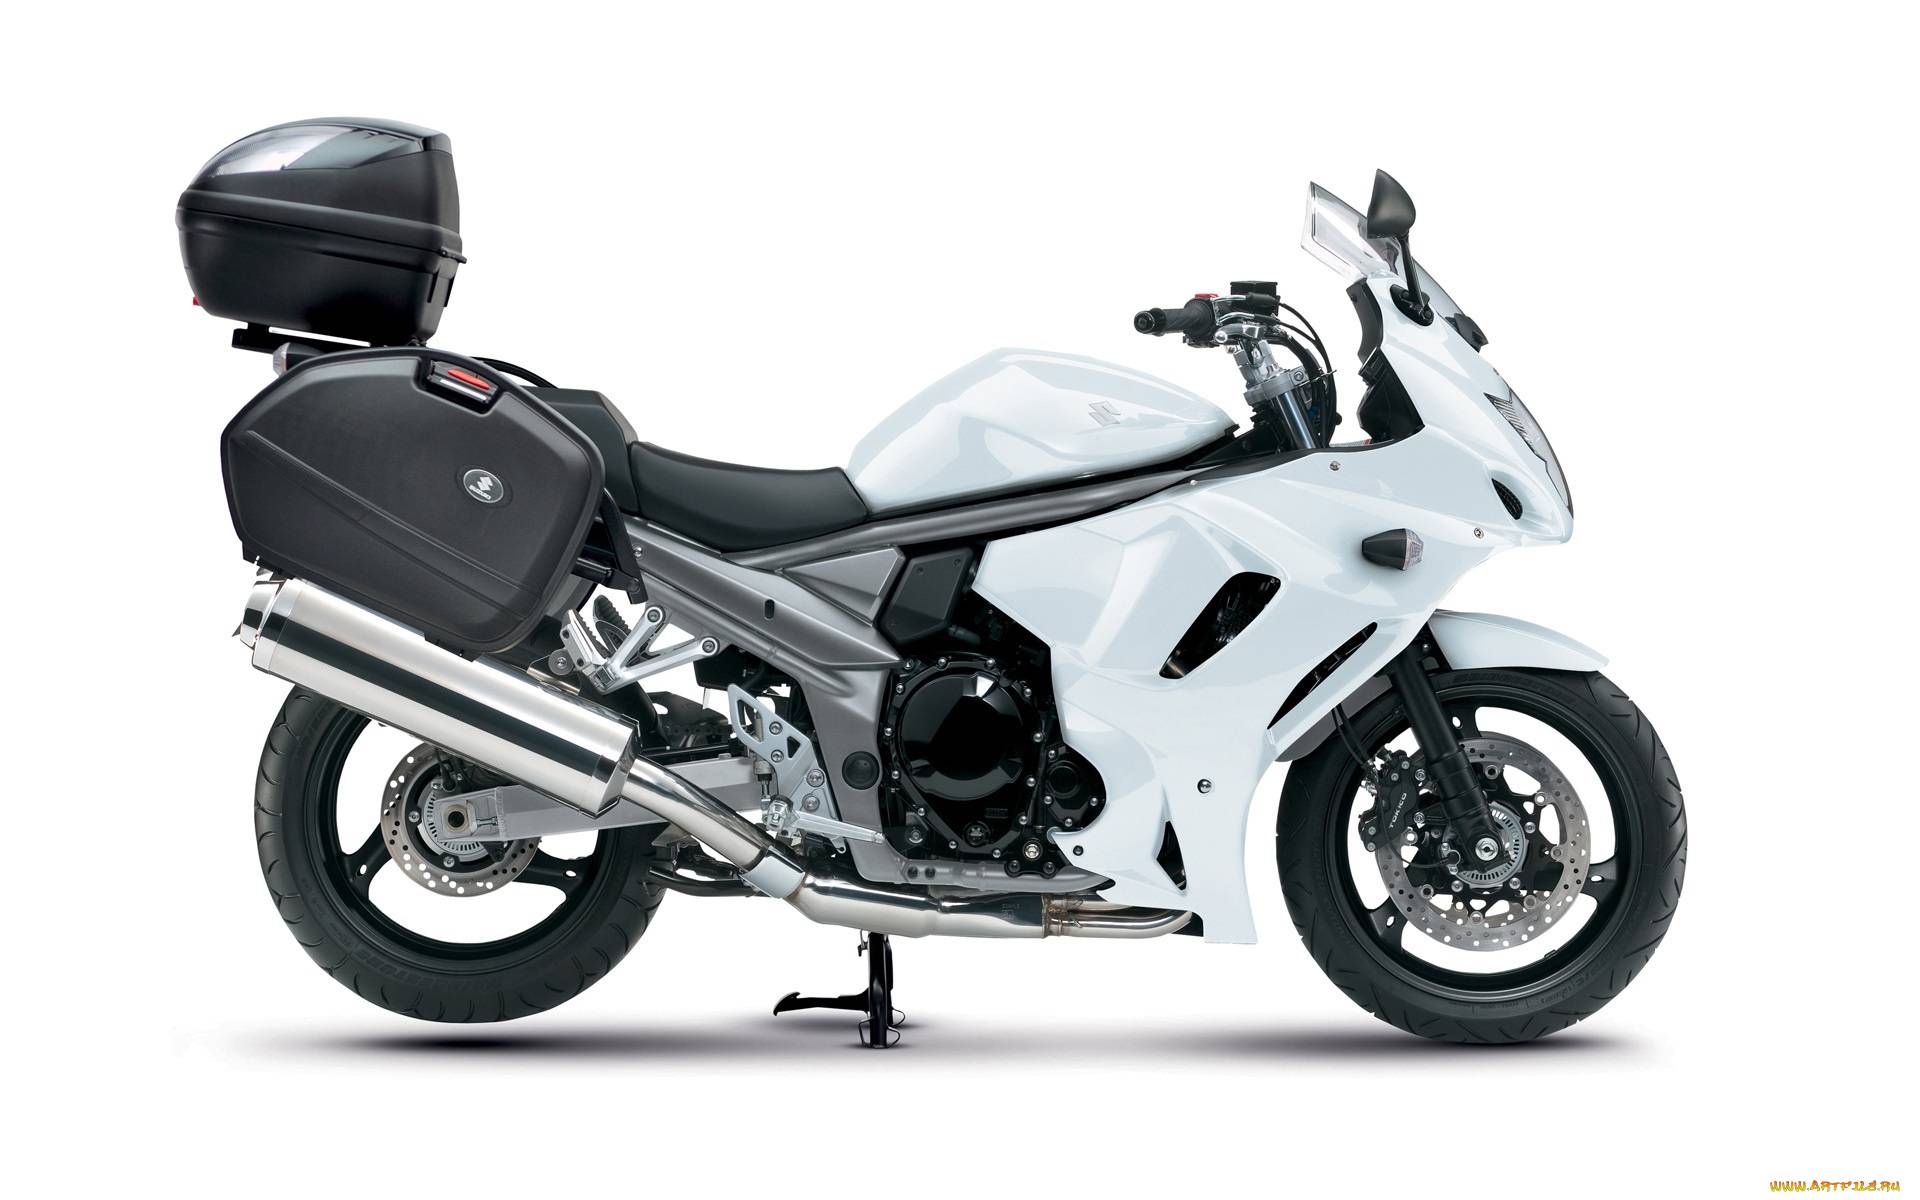 Мотоциклы suzuki: фото, видео, стоимость, характеристики мотоциклов suzuki